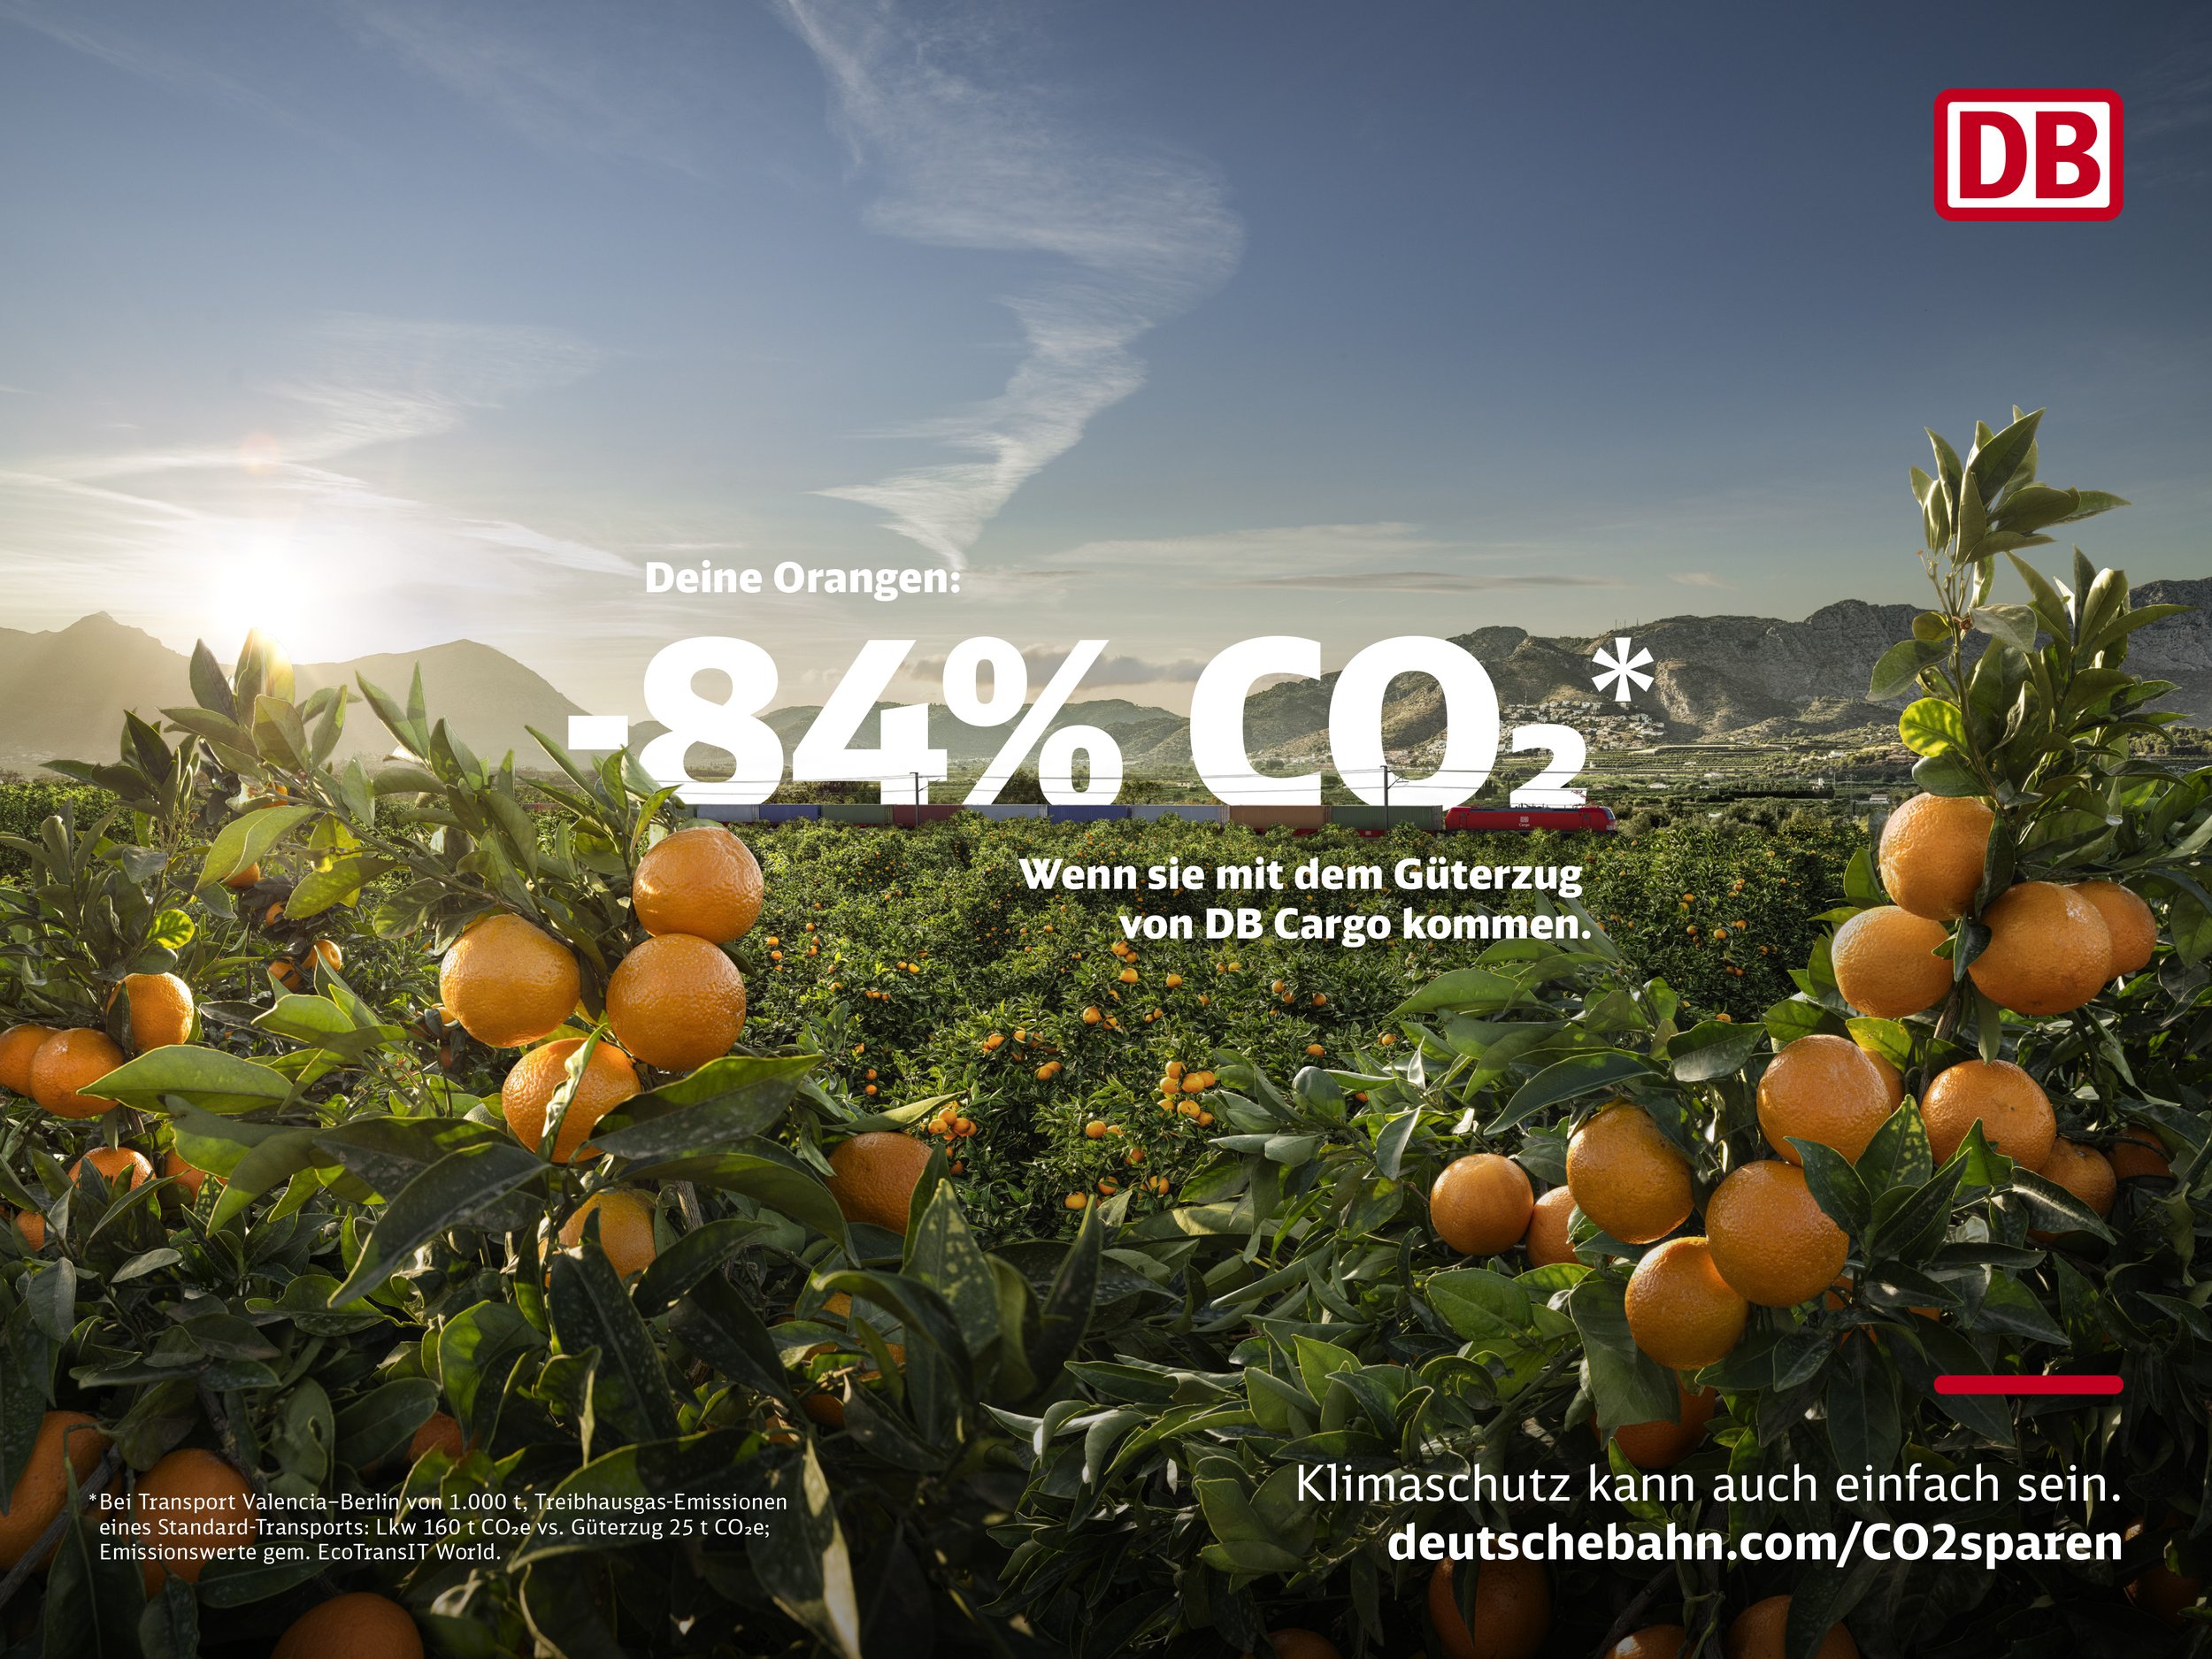 Michel_Jaussi_Photography_DB_Deutsche_Bahn_Klima_Kampagne_Corporate-Orangen-Spanien.jpg